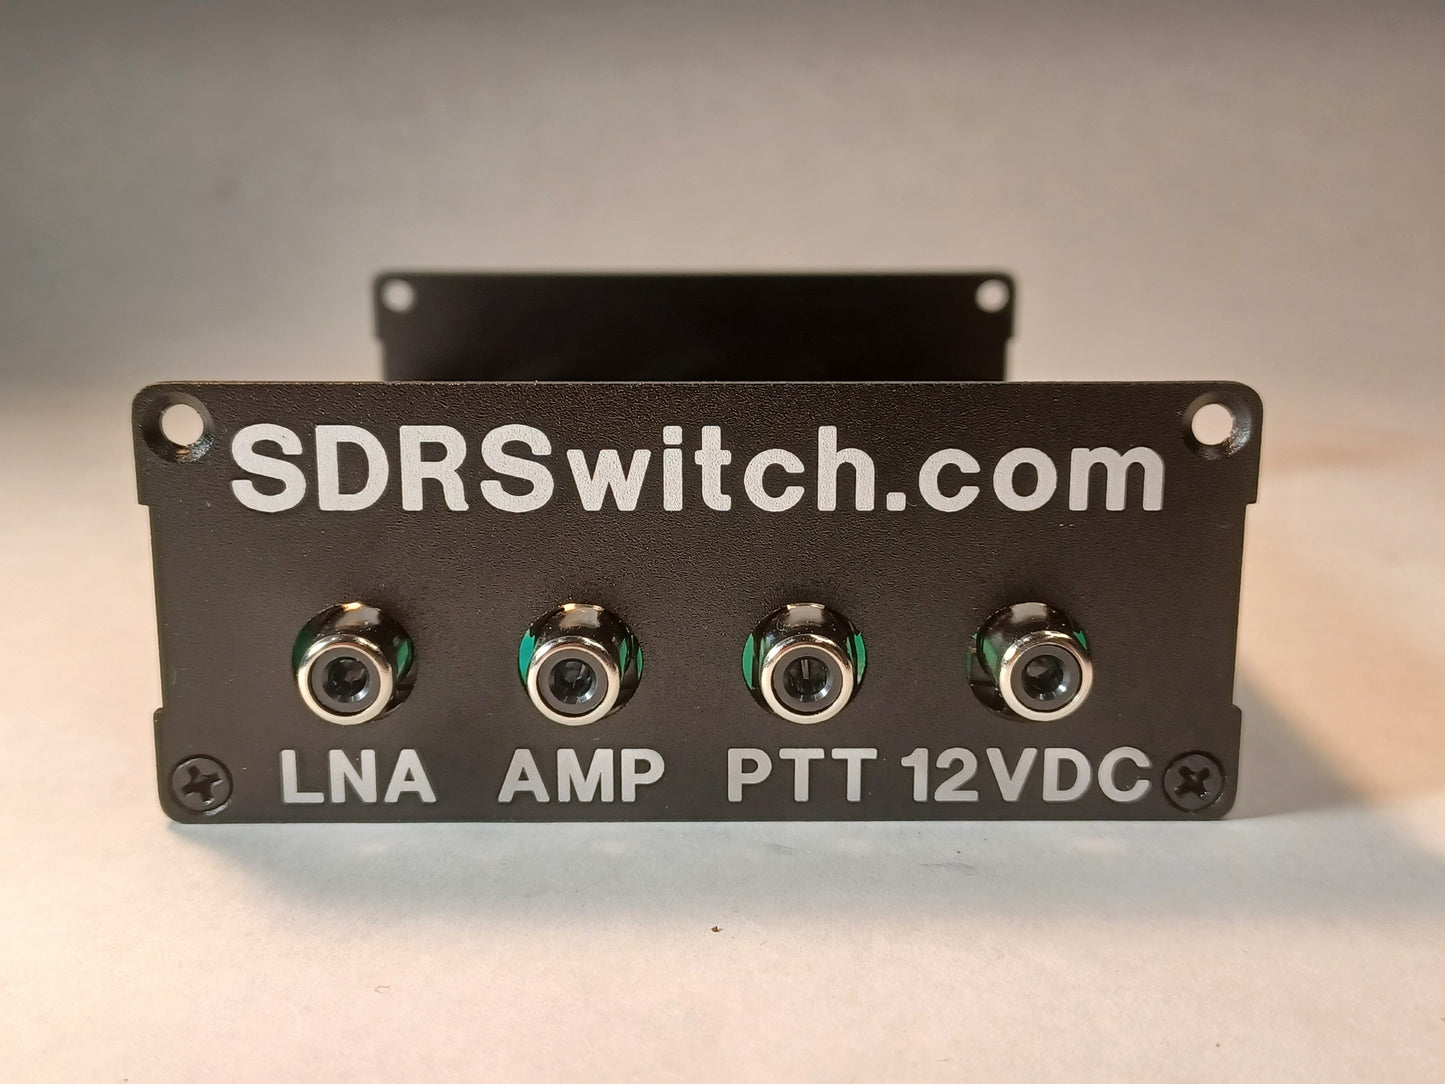 0-450MHz 100W RXin RXout SDR Switch.